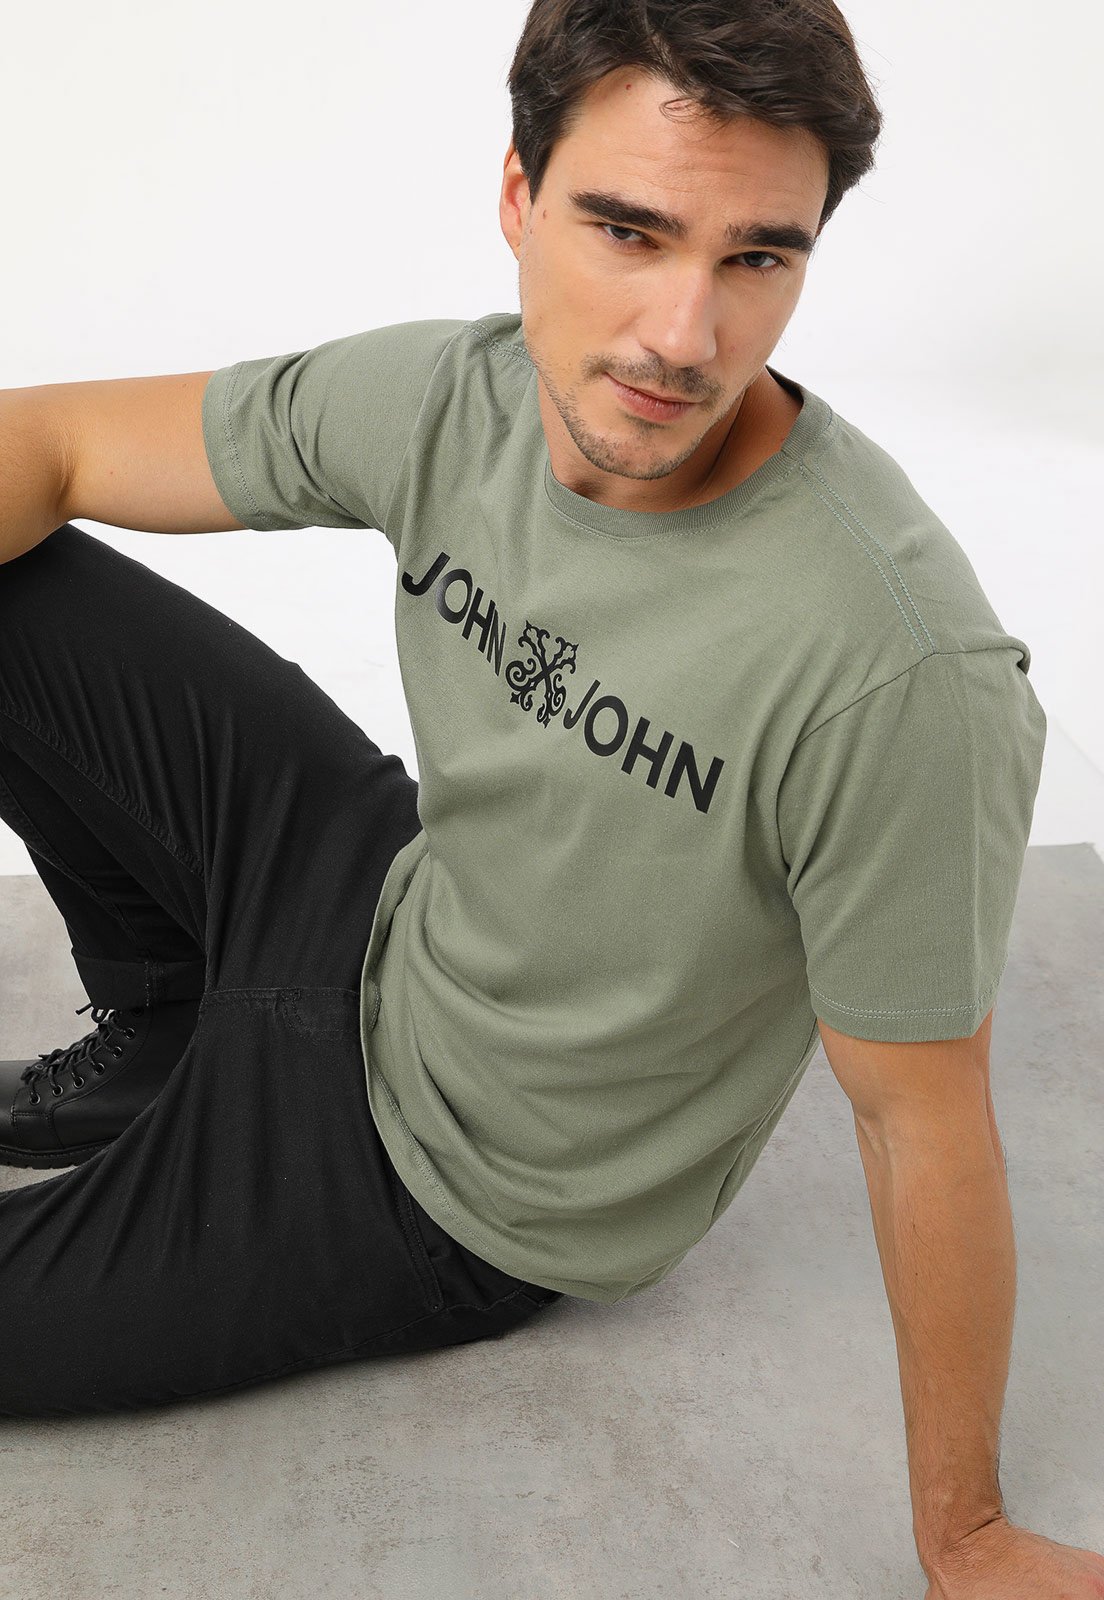 Camiseta John John London Off-White/Verde 